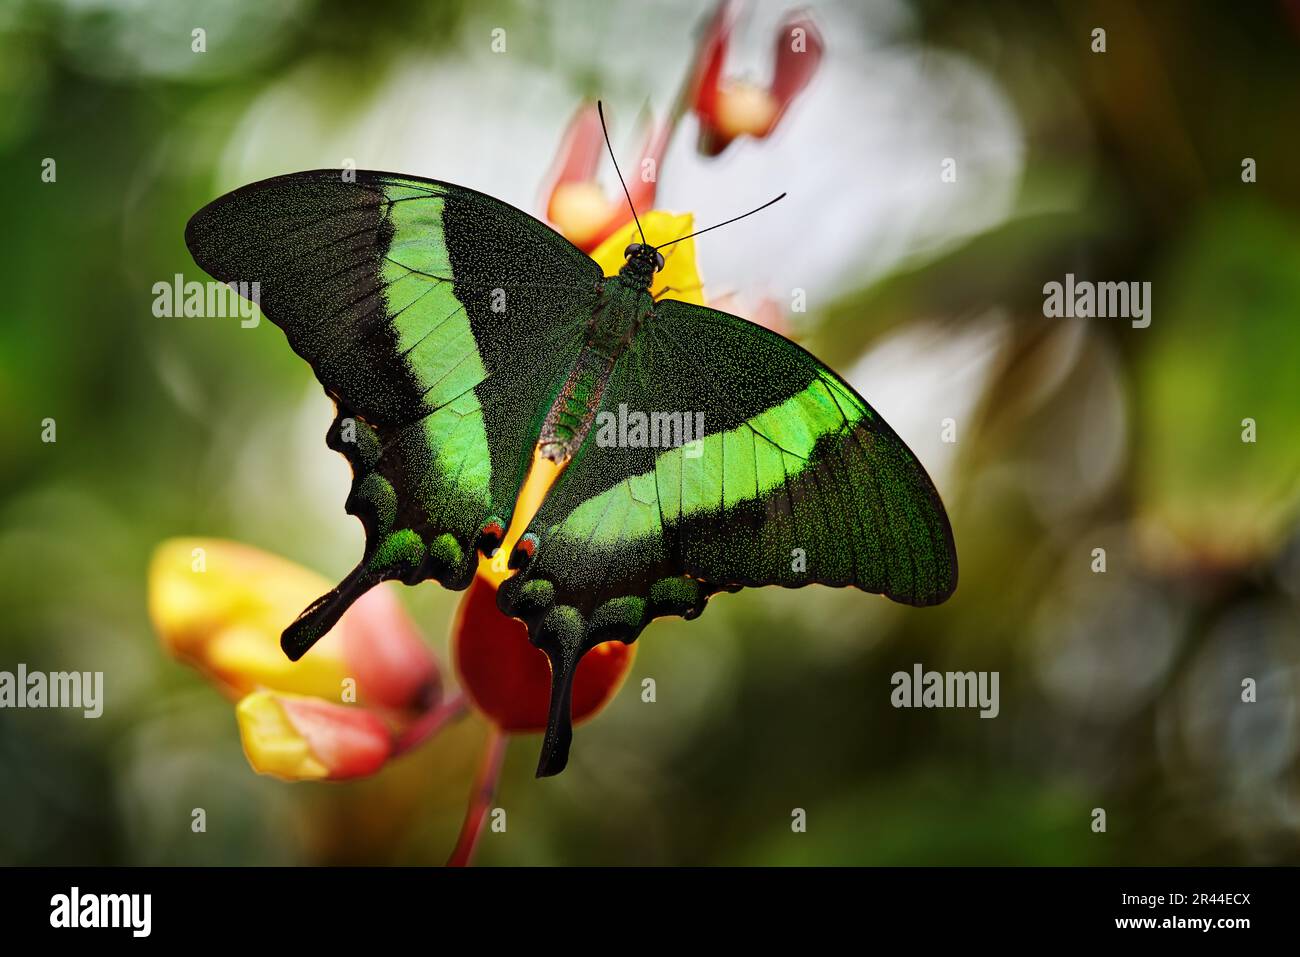 Papilio palinurus, farfalla verde smeraldo a coda di rondine. Insetto su fiore fiorisce nell'habitat naturale. Una farfalla in Indonesia. Natura selvaggia. Trop Foto Stock